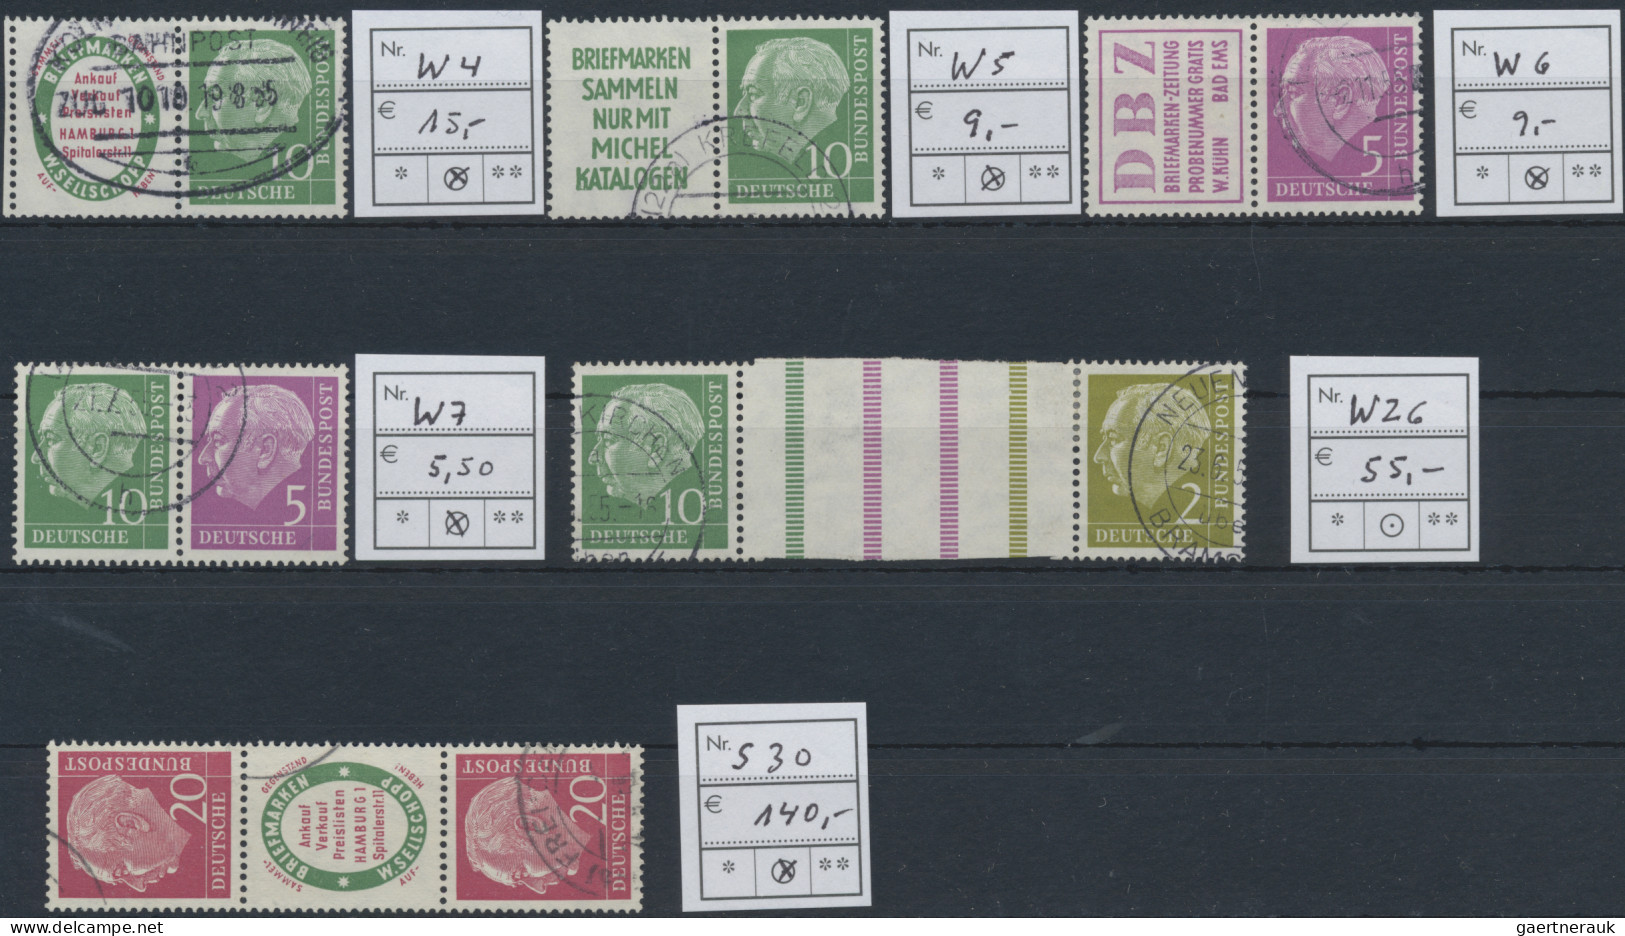 Bundesrepublik Deutschland: 1949/1961, Konvolut auf Steckkarten mit u.a. Posthor